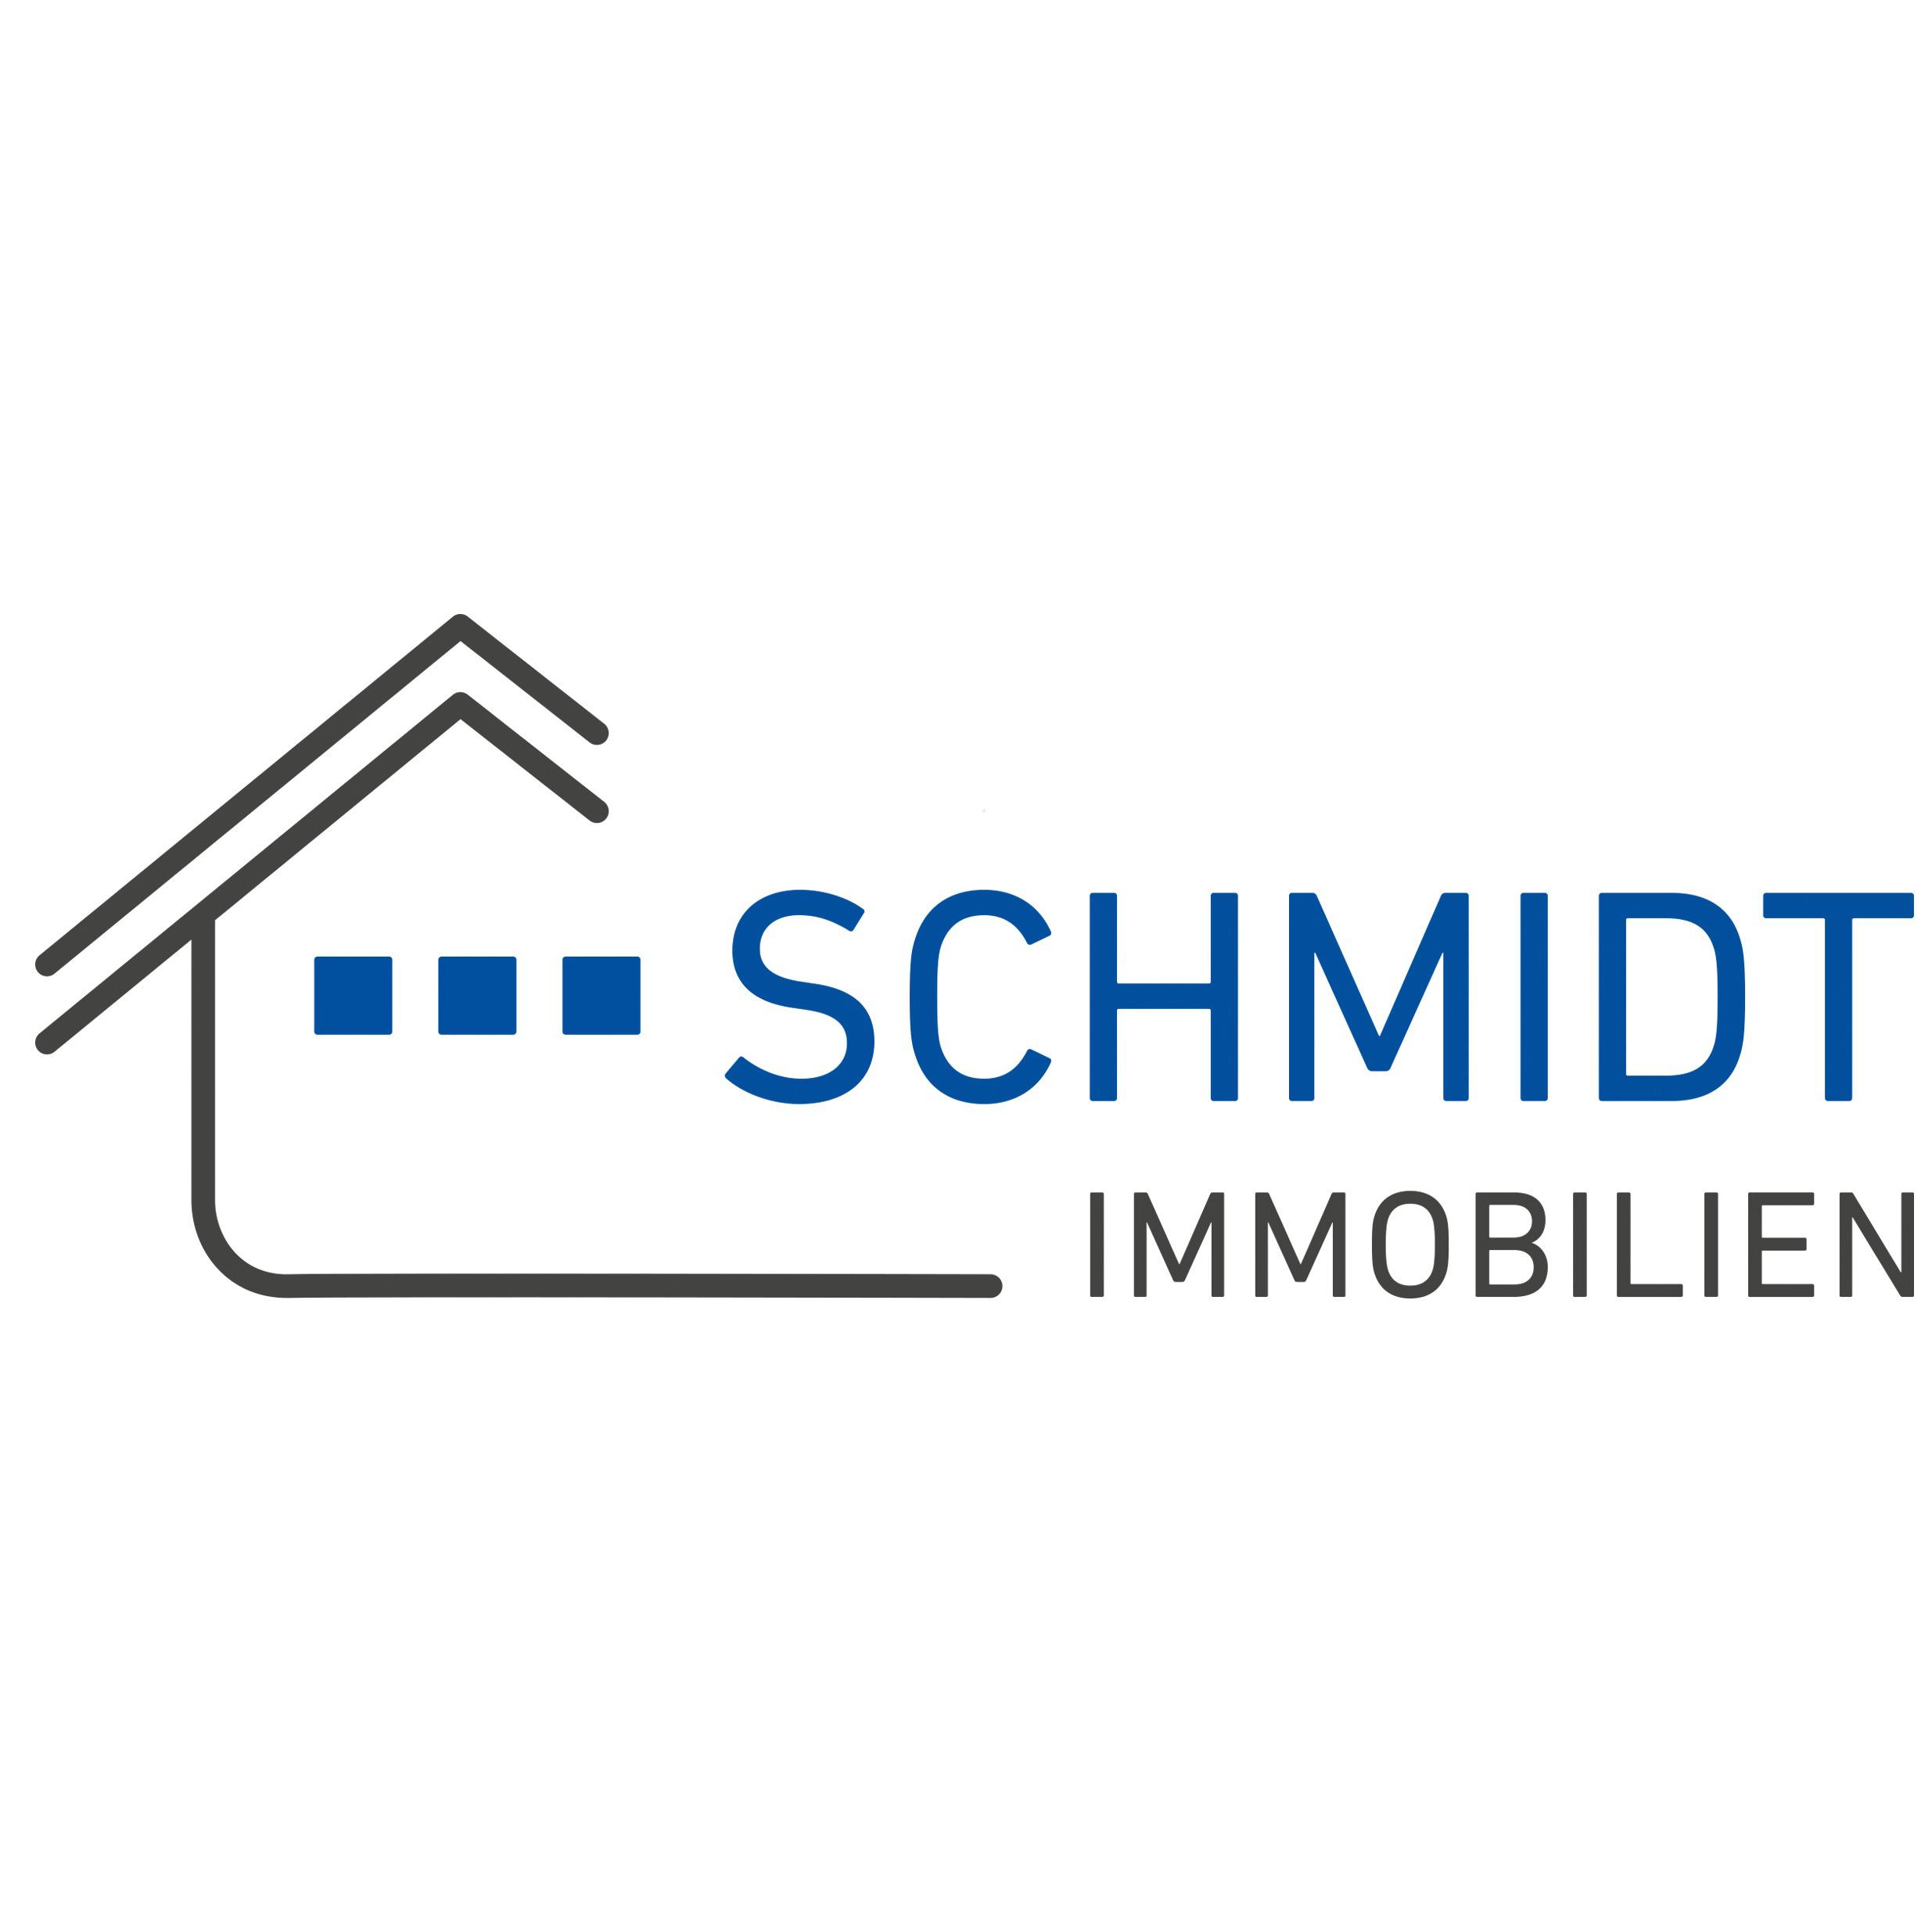 Schmidt Immobilien - Ein Service der Karl Schmidt Hausverwaltungen GmbH in Bietigheim Bissingen - Logo